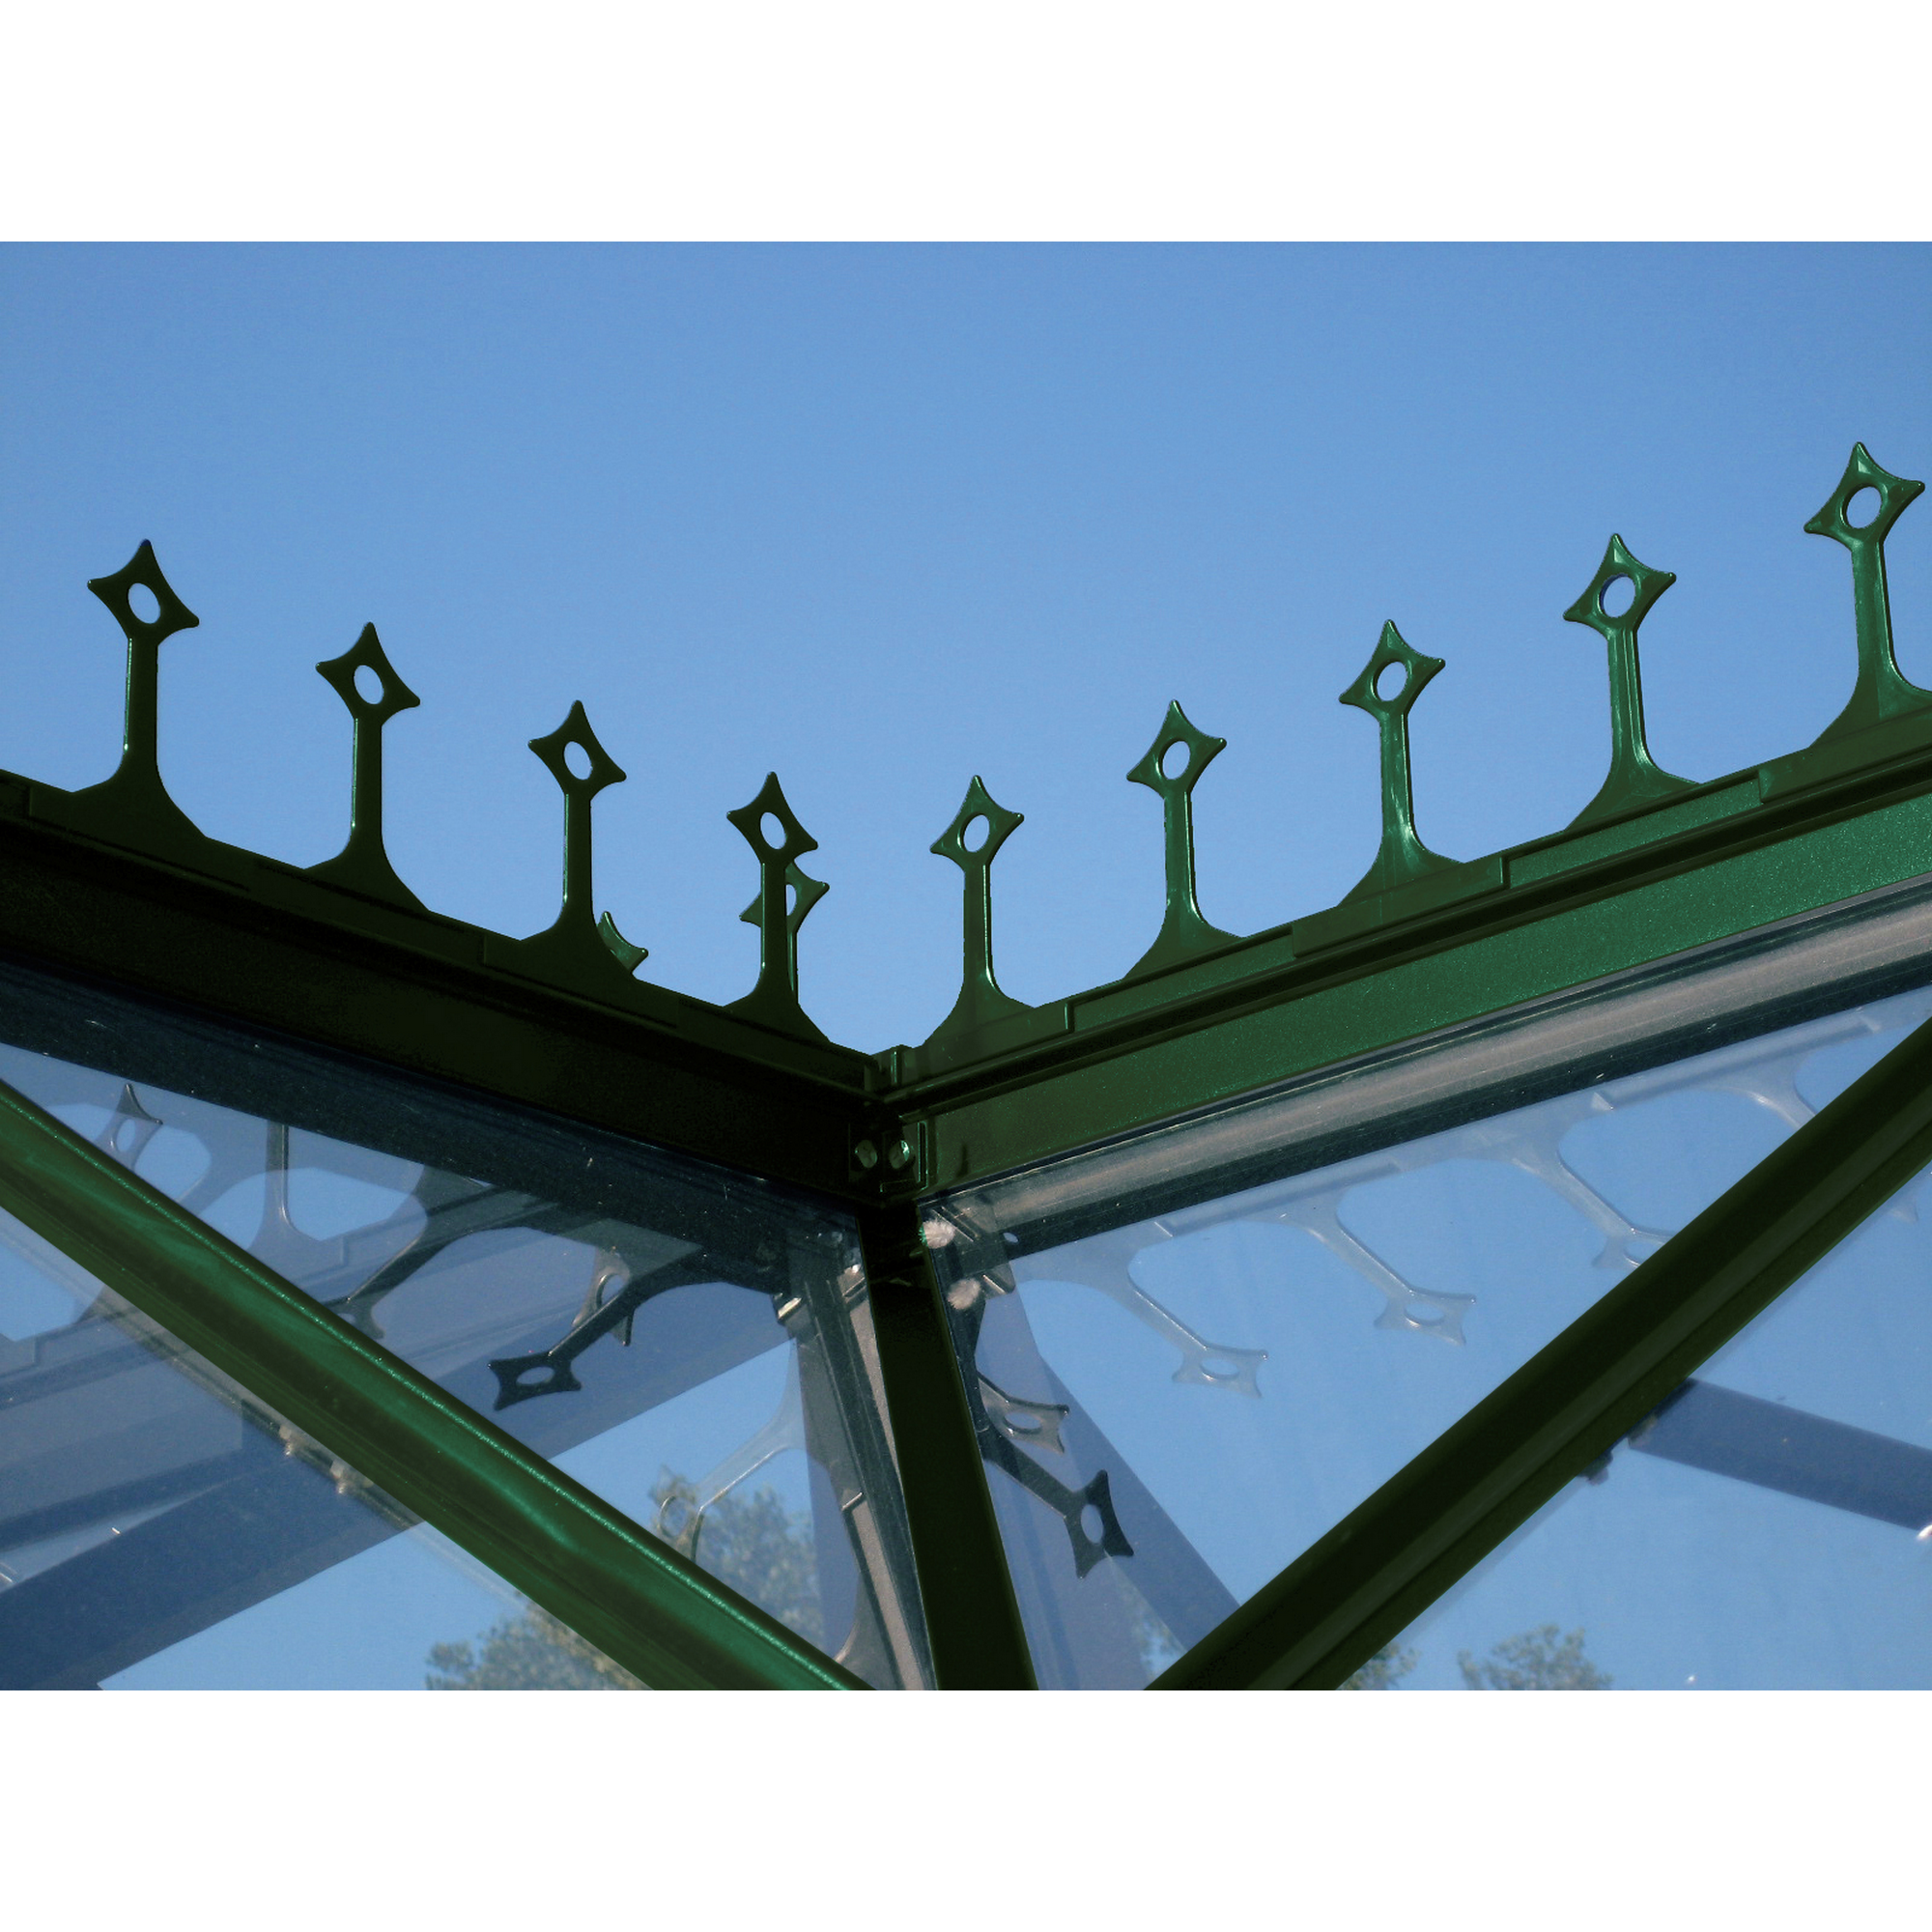 Dachfirstverzierung für Gewächshaus 'Sirius' smaragdgrün + product picture